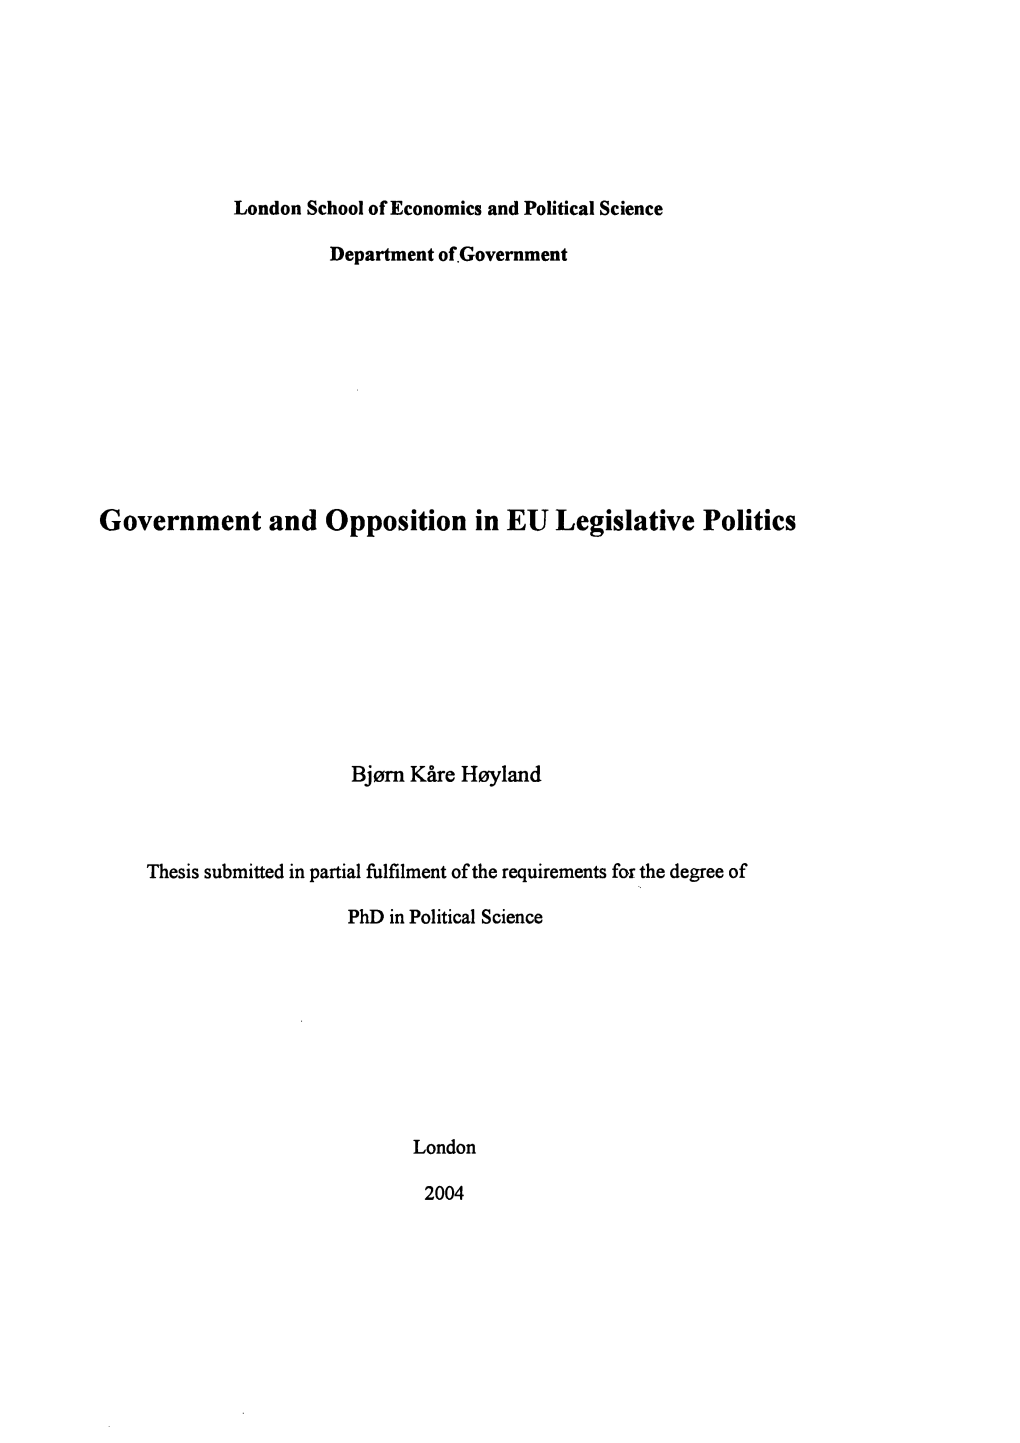 Government and Opposition in EU Legislative Politics